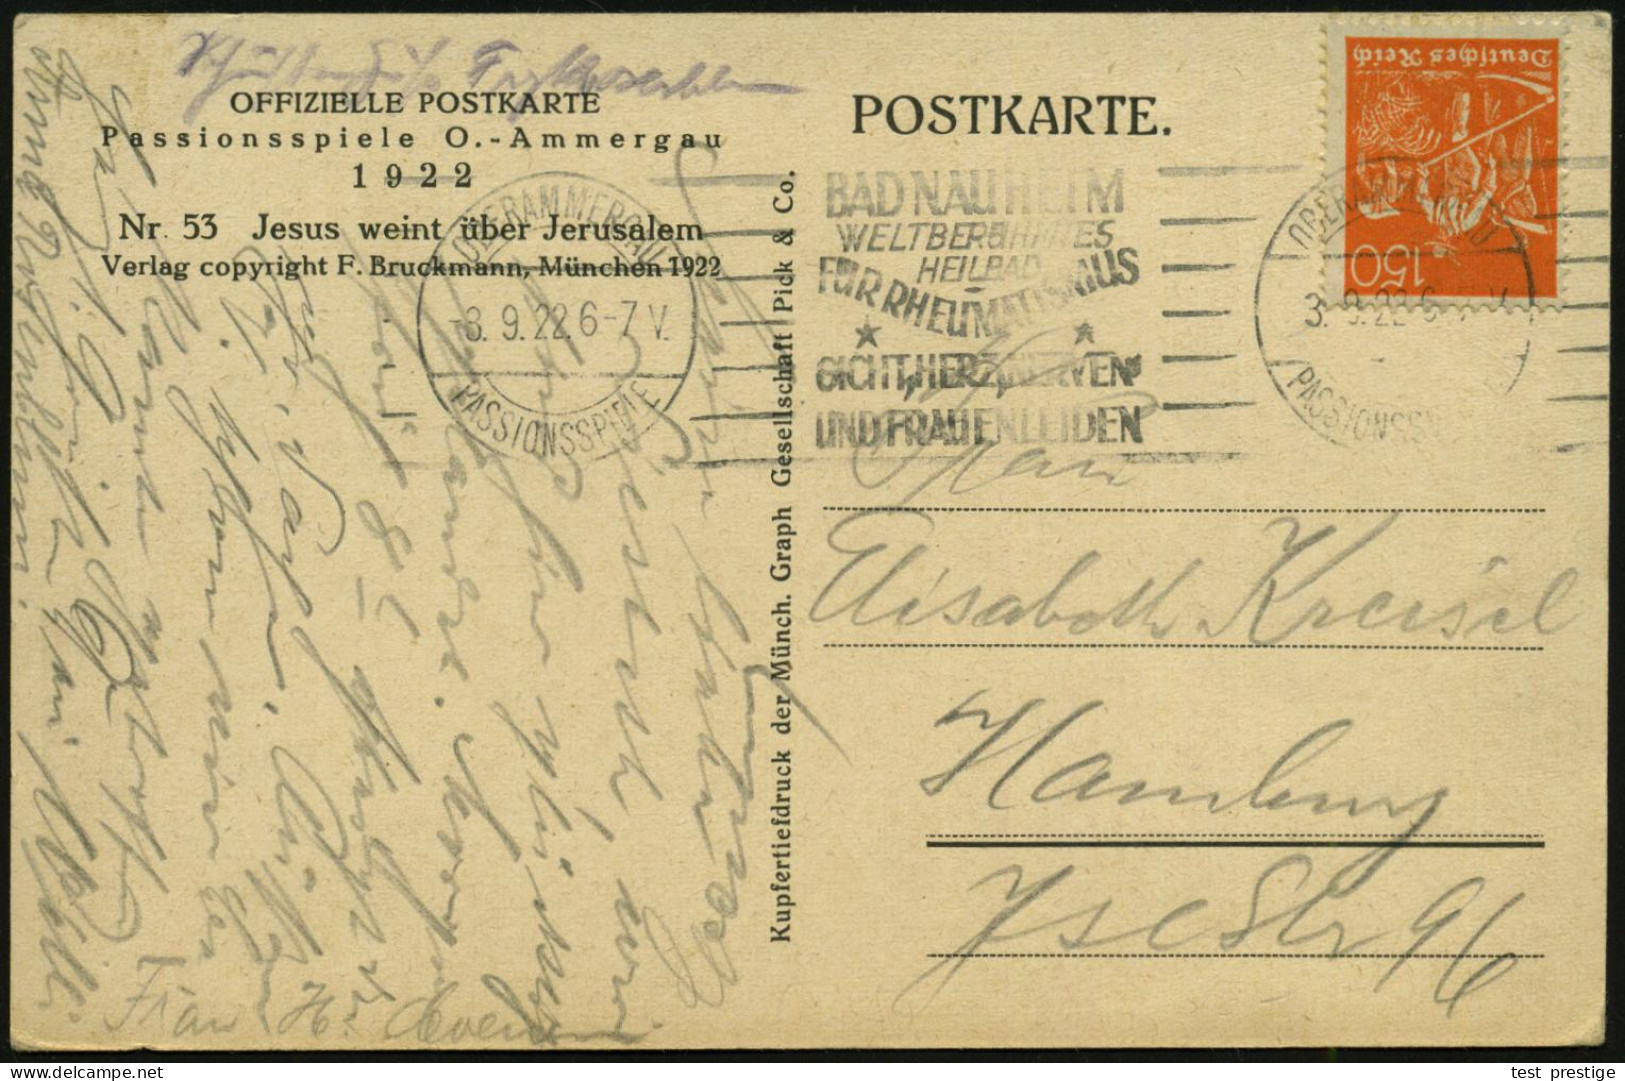 OBERAMMERGAU/ PASSIONSSPIELE/ BAD NAUHEIM/ ..HEILBAD/ FÜR RHEUMATISMUS/ GICHT.. 1922 (8.9.) Seltener Band-MWSt (Sonderfo - Disease